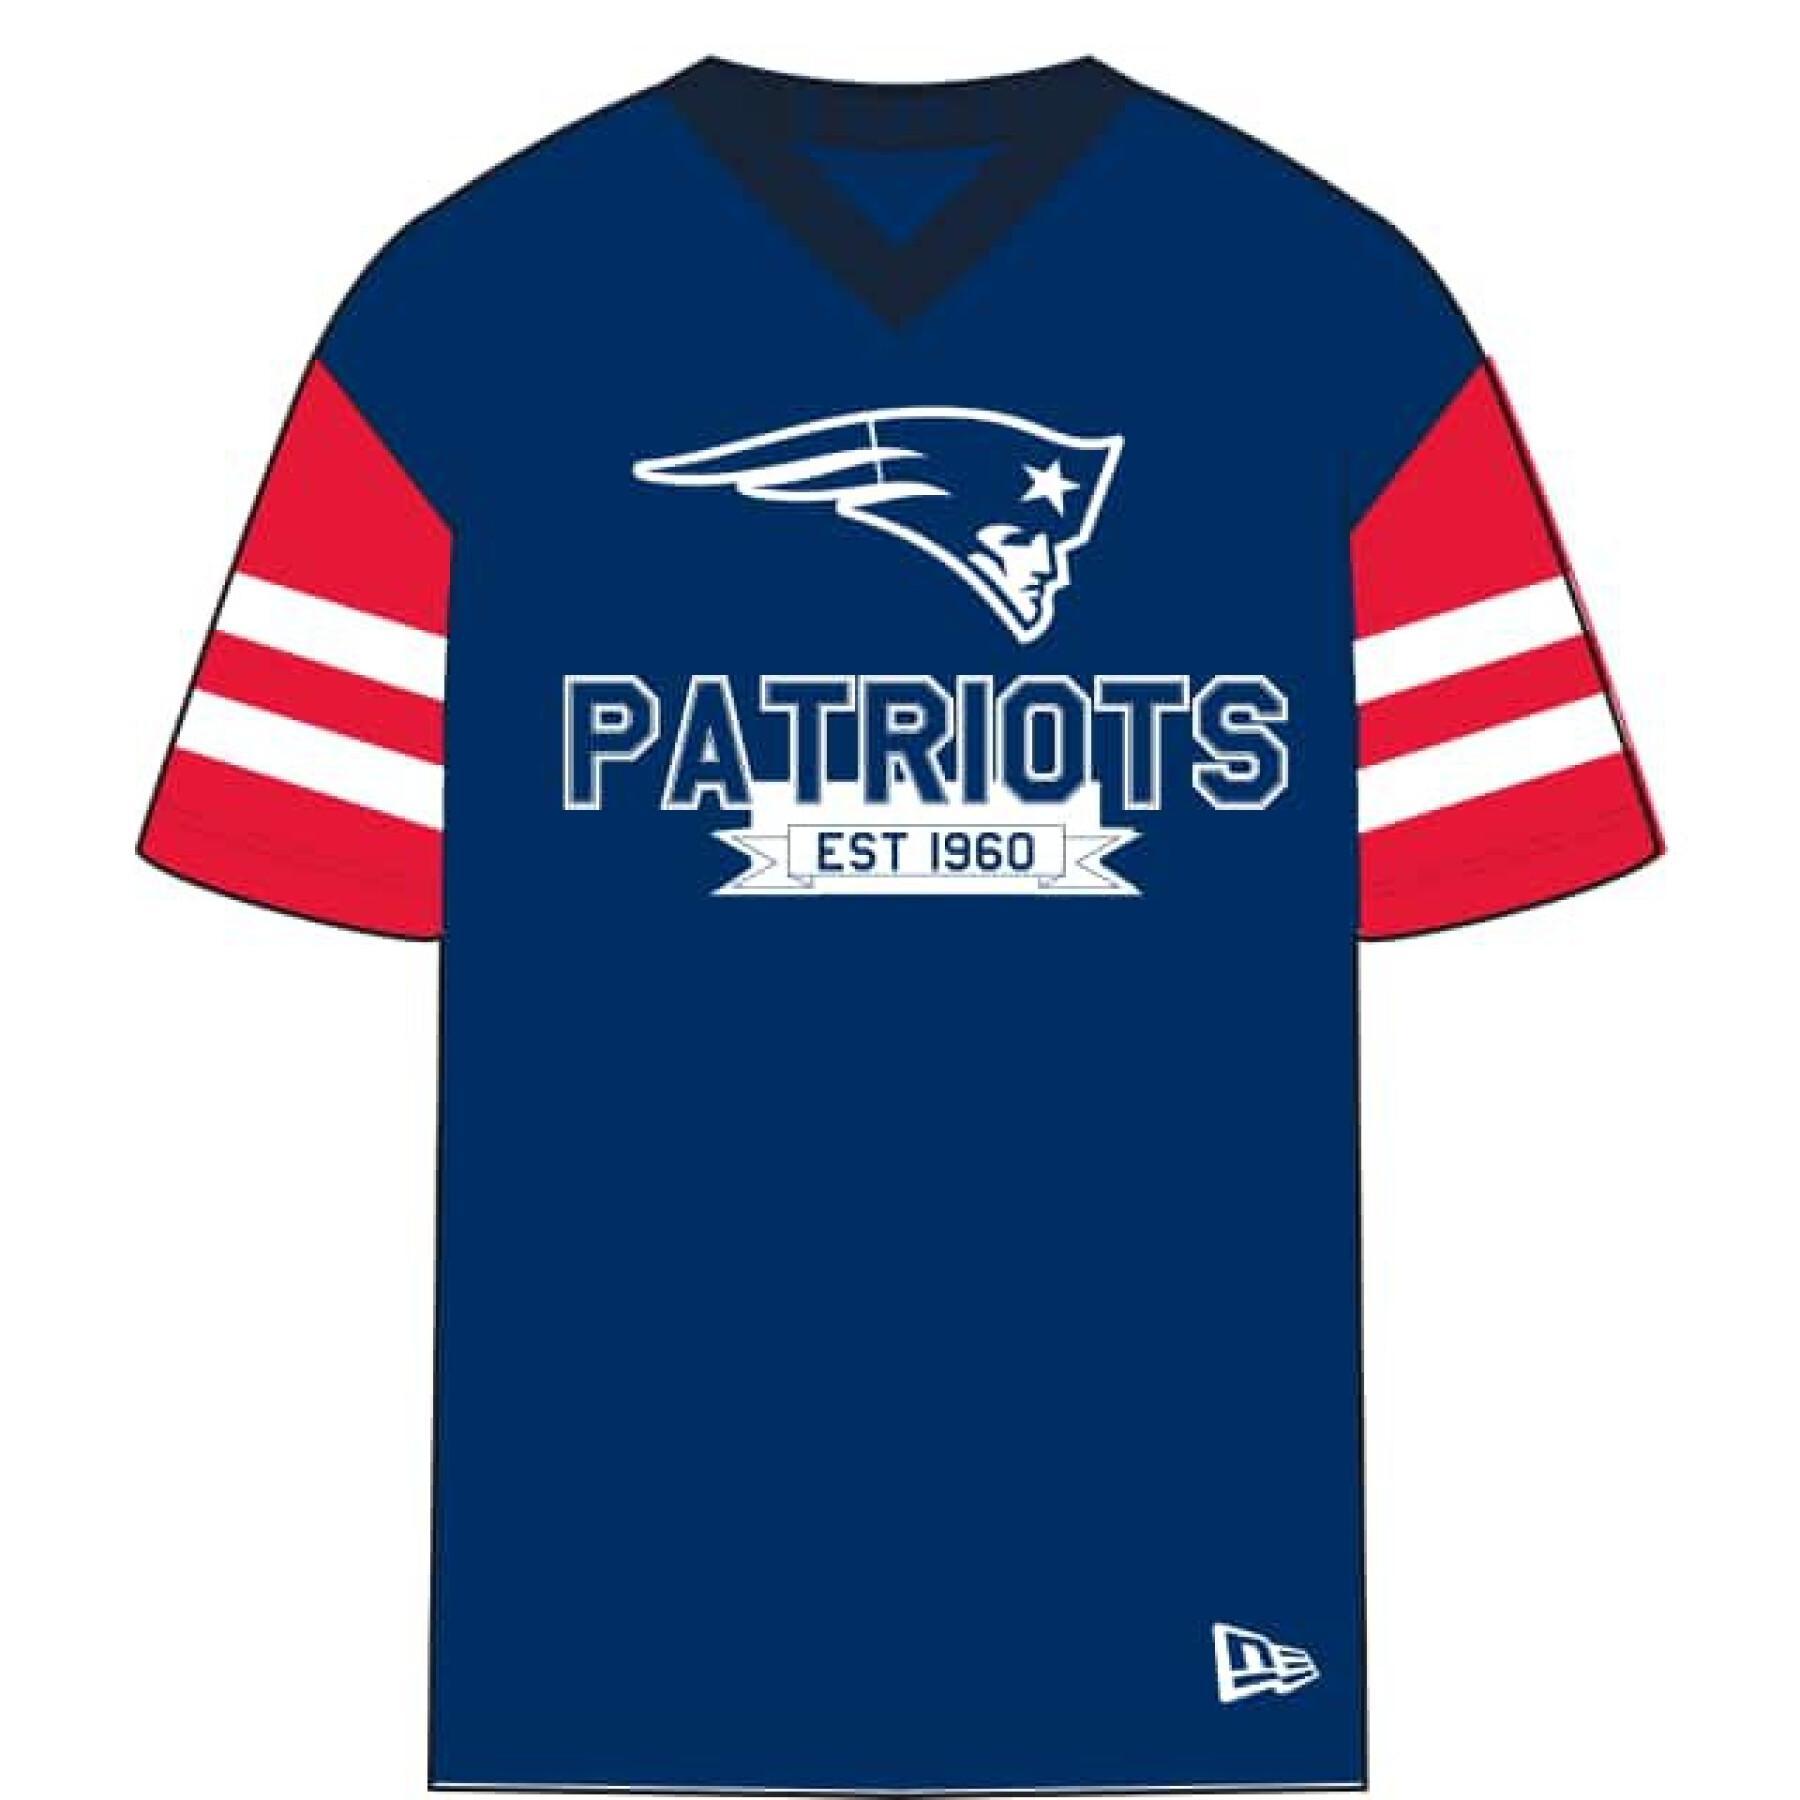  New EraT - s h i r t   NFL Os New England Patriots